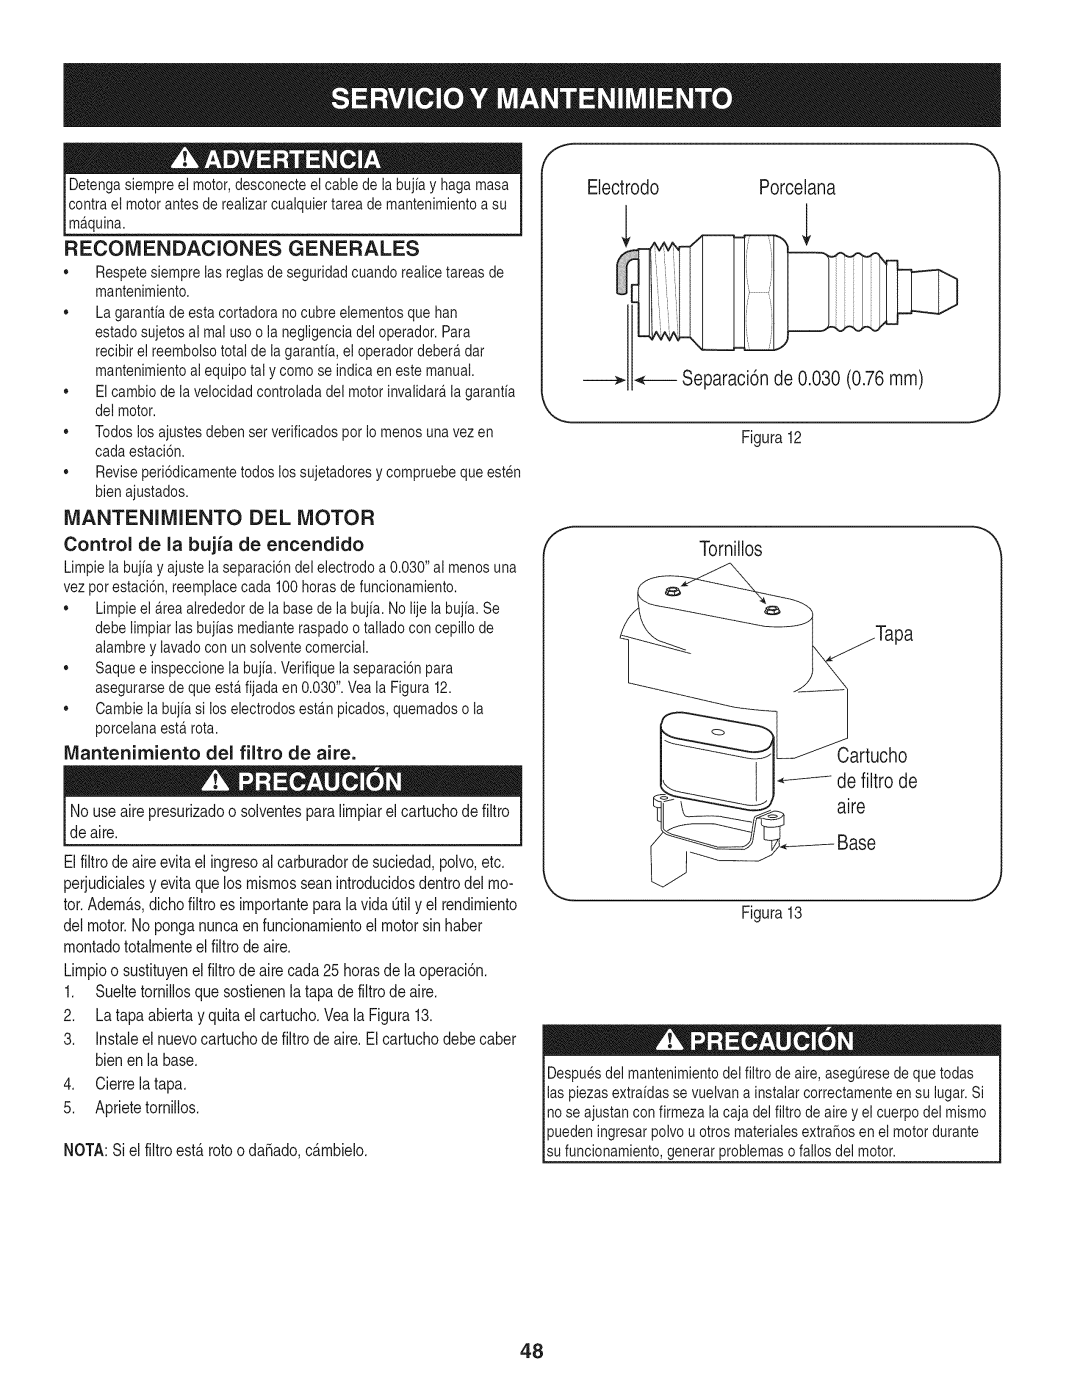 Craftsman 88721 manual Recomendaciones Generales, Manteniiviiento Del Motor, ElectrodoPorcelana, Separaci6n de 0.030 0.76mm 